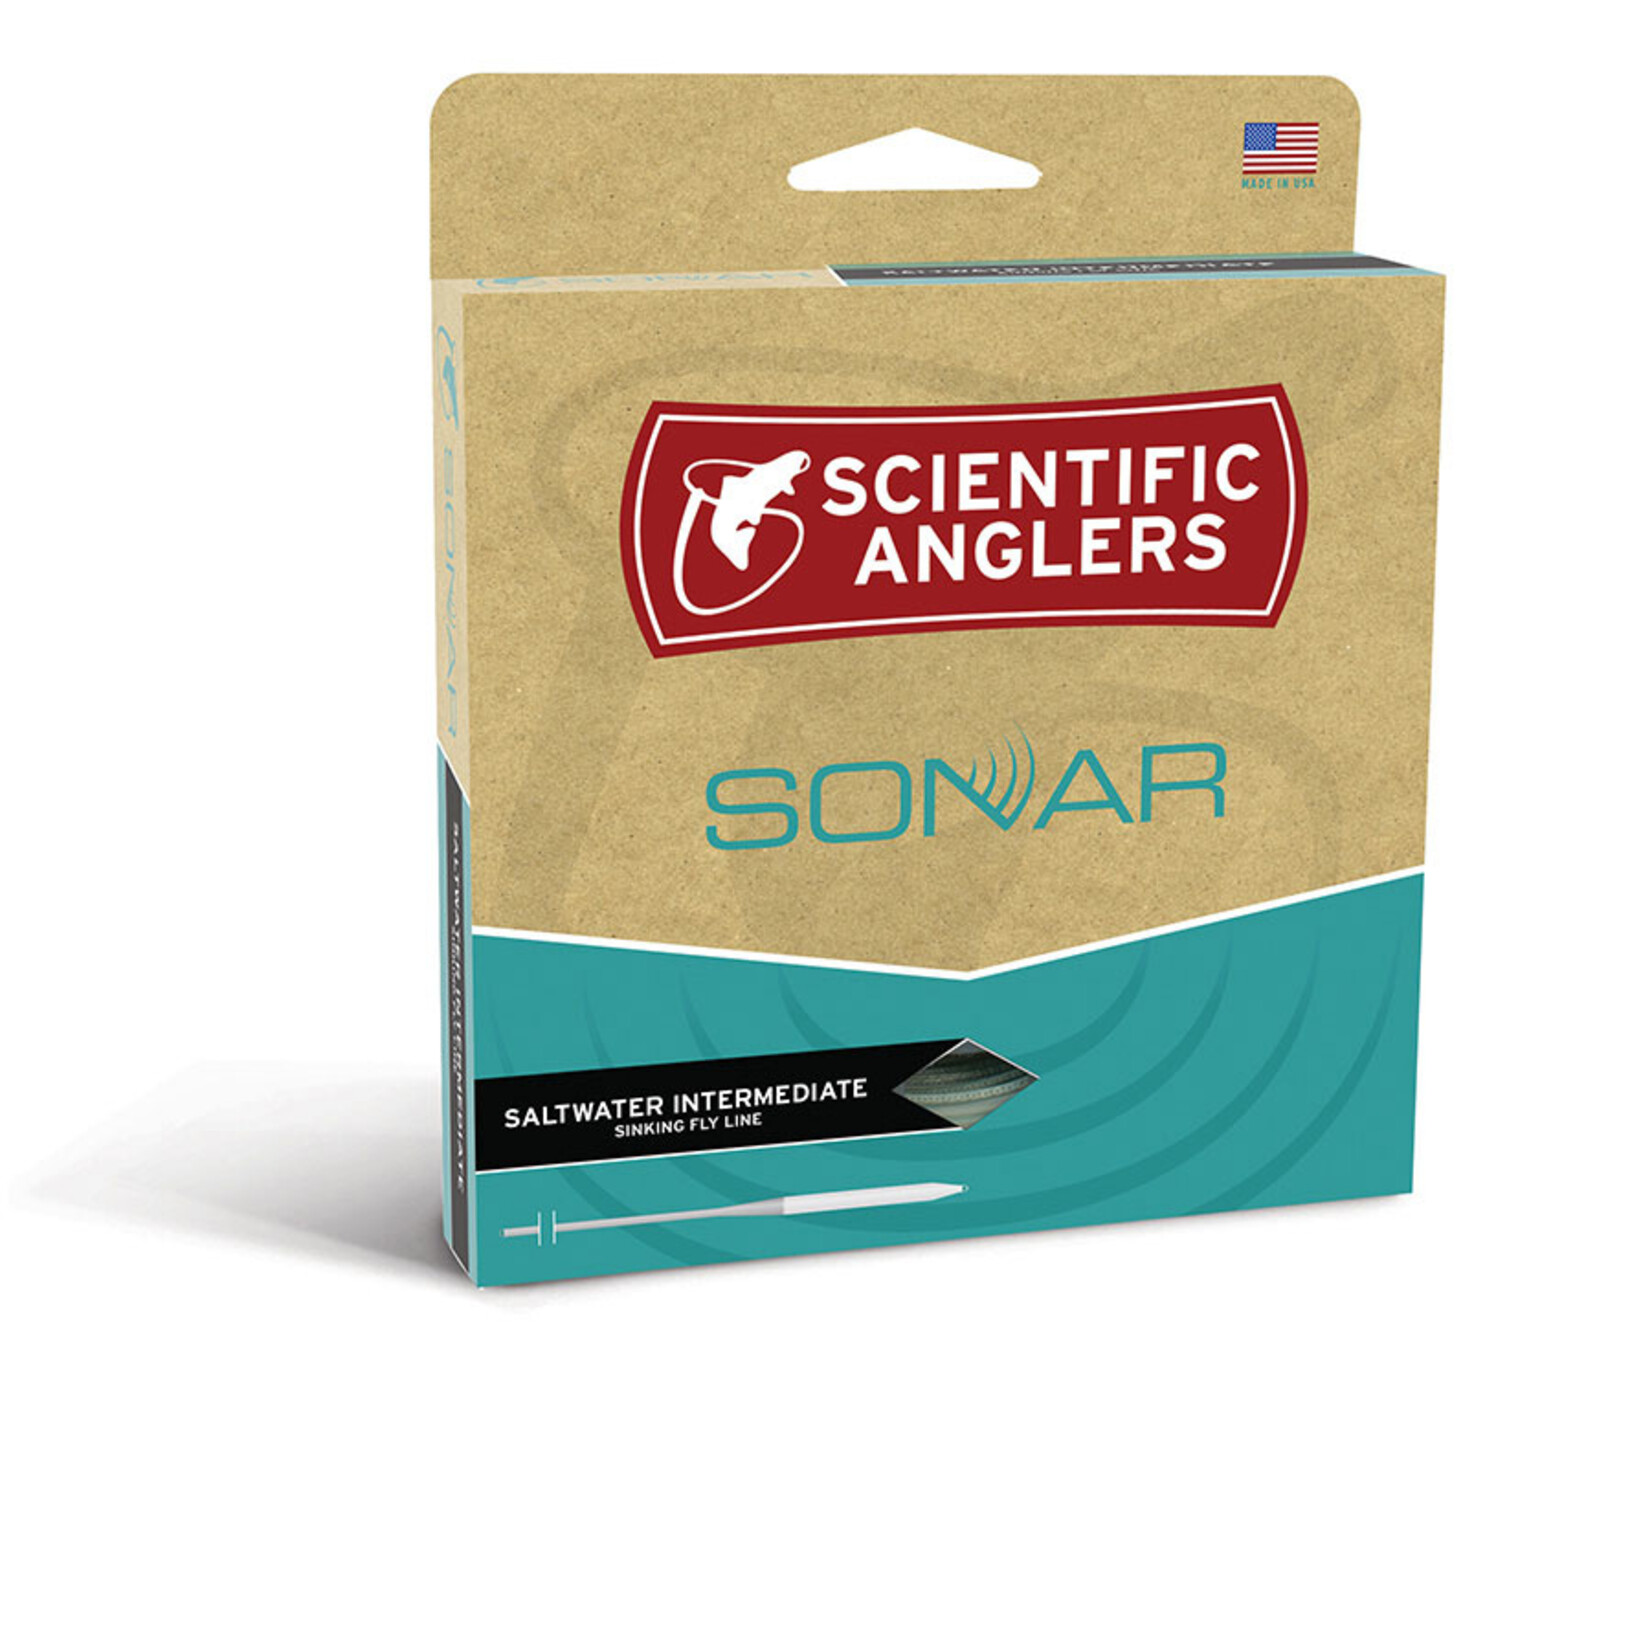 Scientific Anglers Scientific Anglers Sonar Saltwater Intermediate